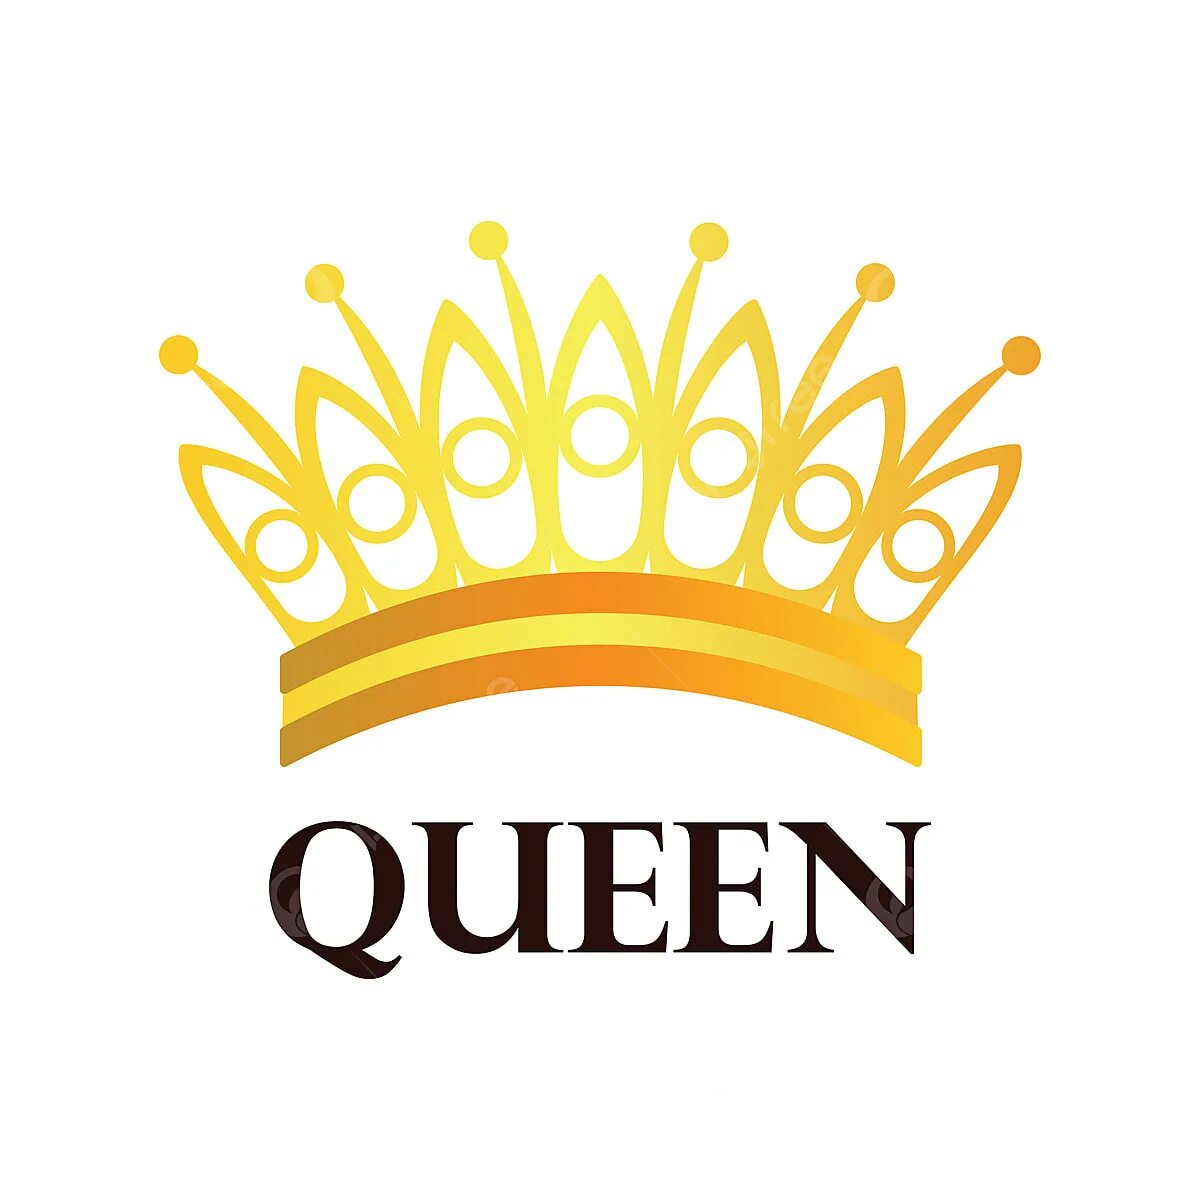 Корона по английски. Корона Queen вектор. Красивая корона для логотипа. Надпись Queen с короной. Корона с надписью Королева.